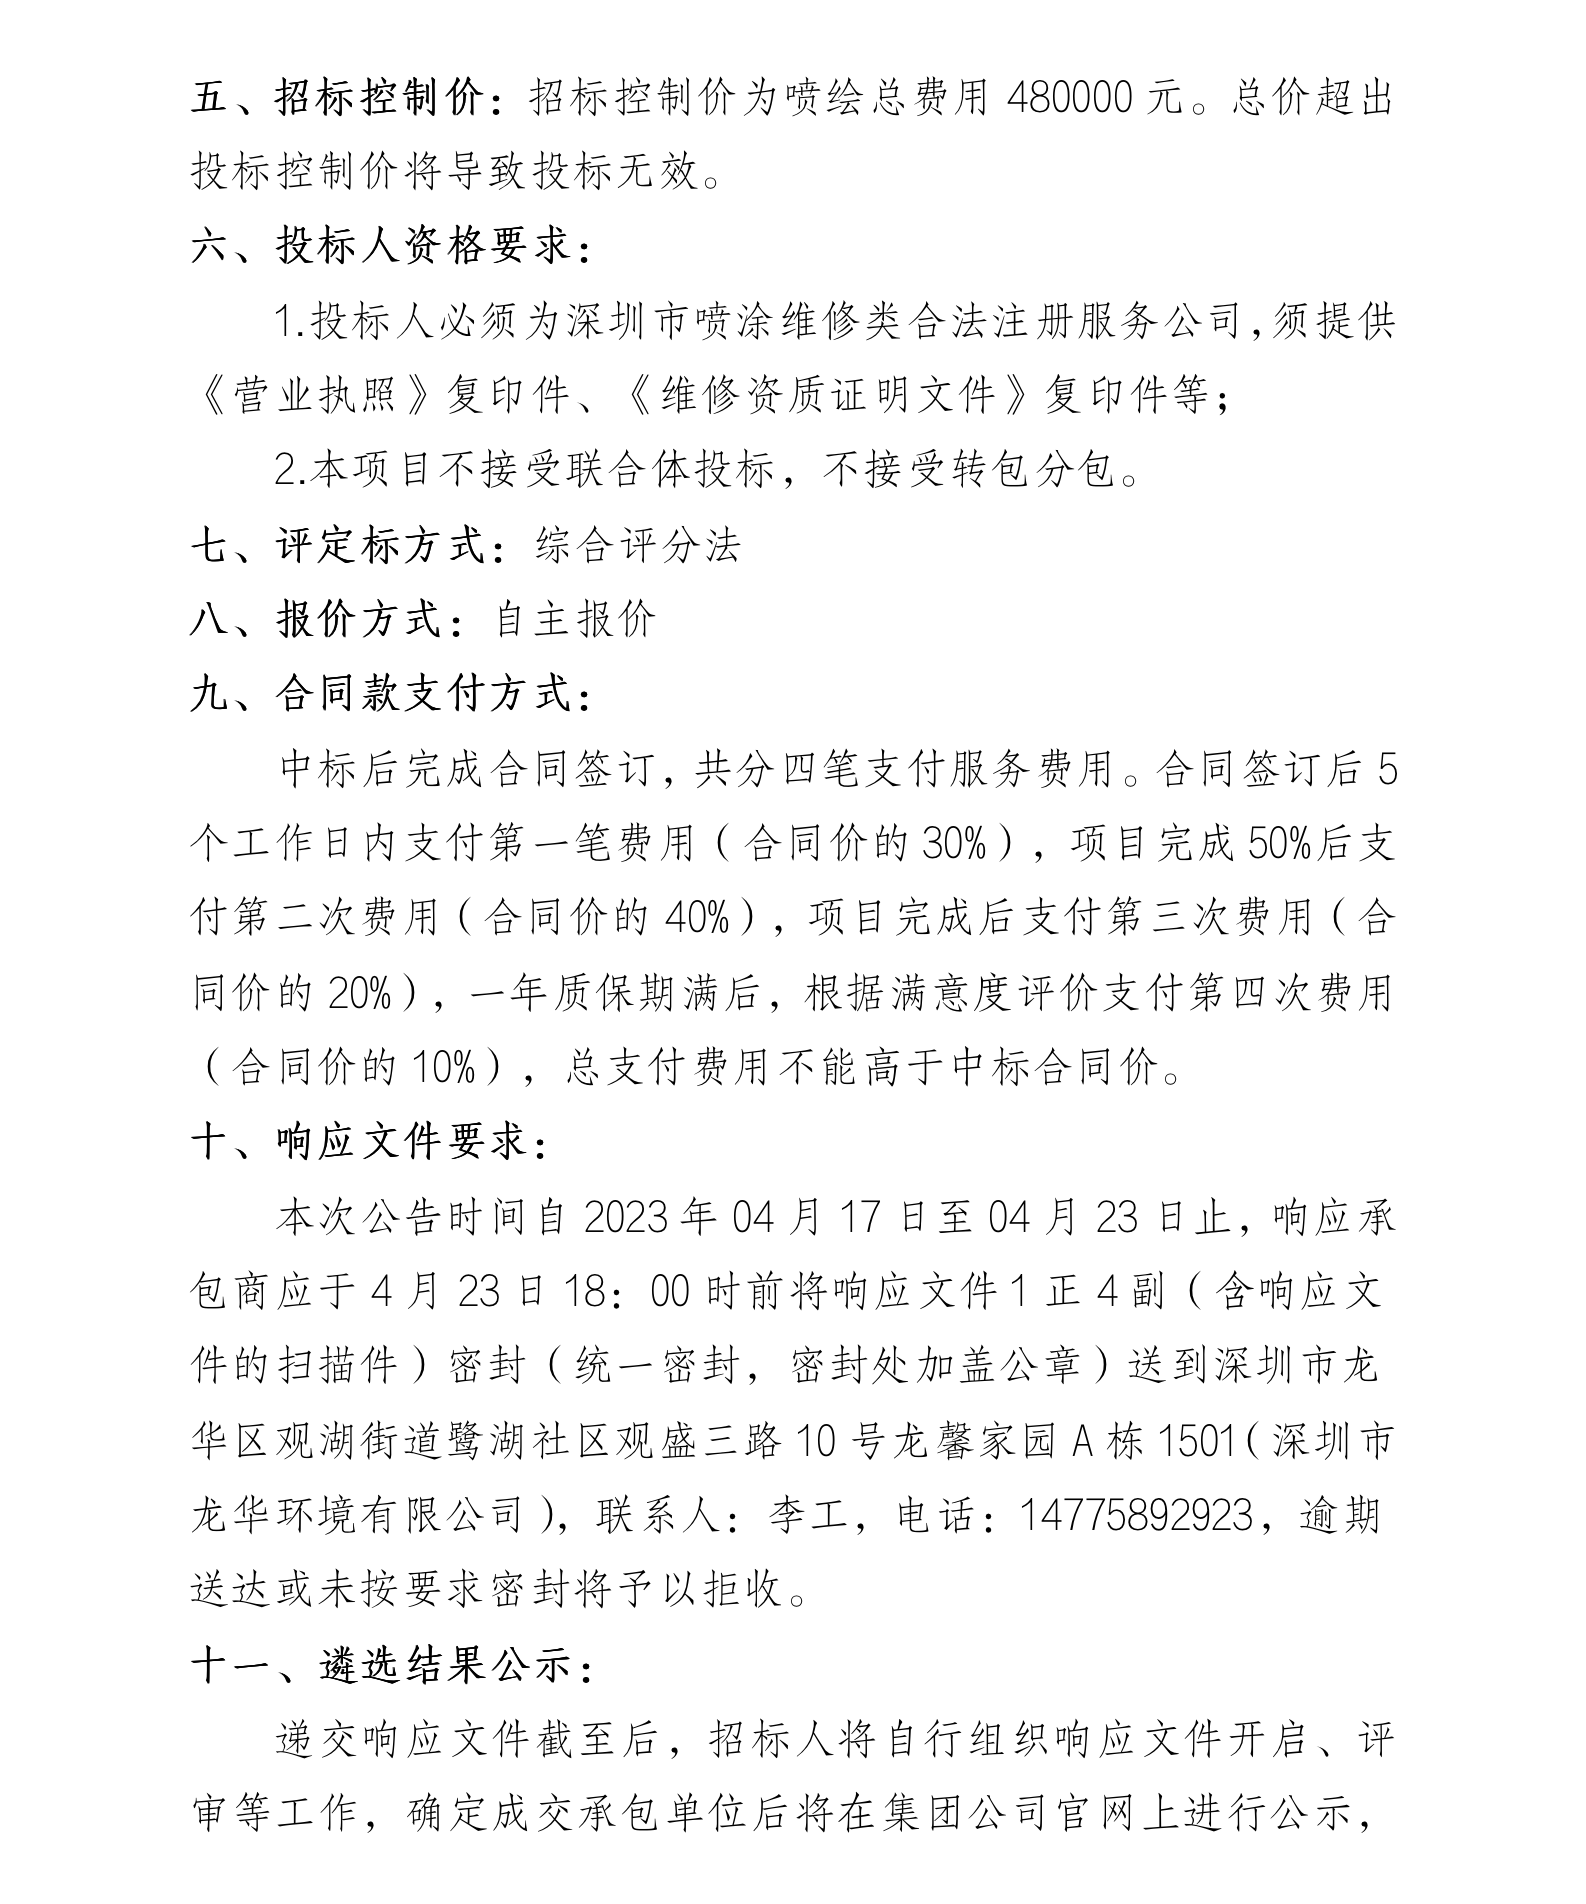 深圳市龙华环境有限公司 勾臂车、压缩箱喷绘服务商遴选的公告